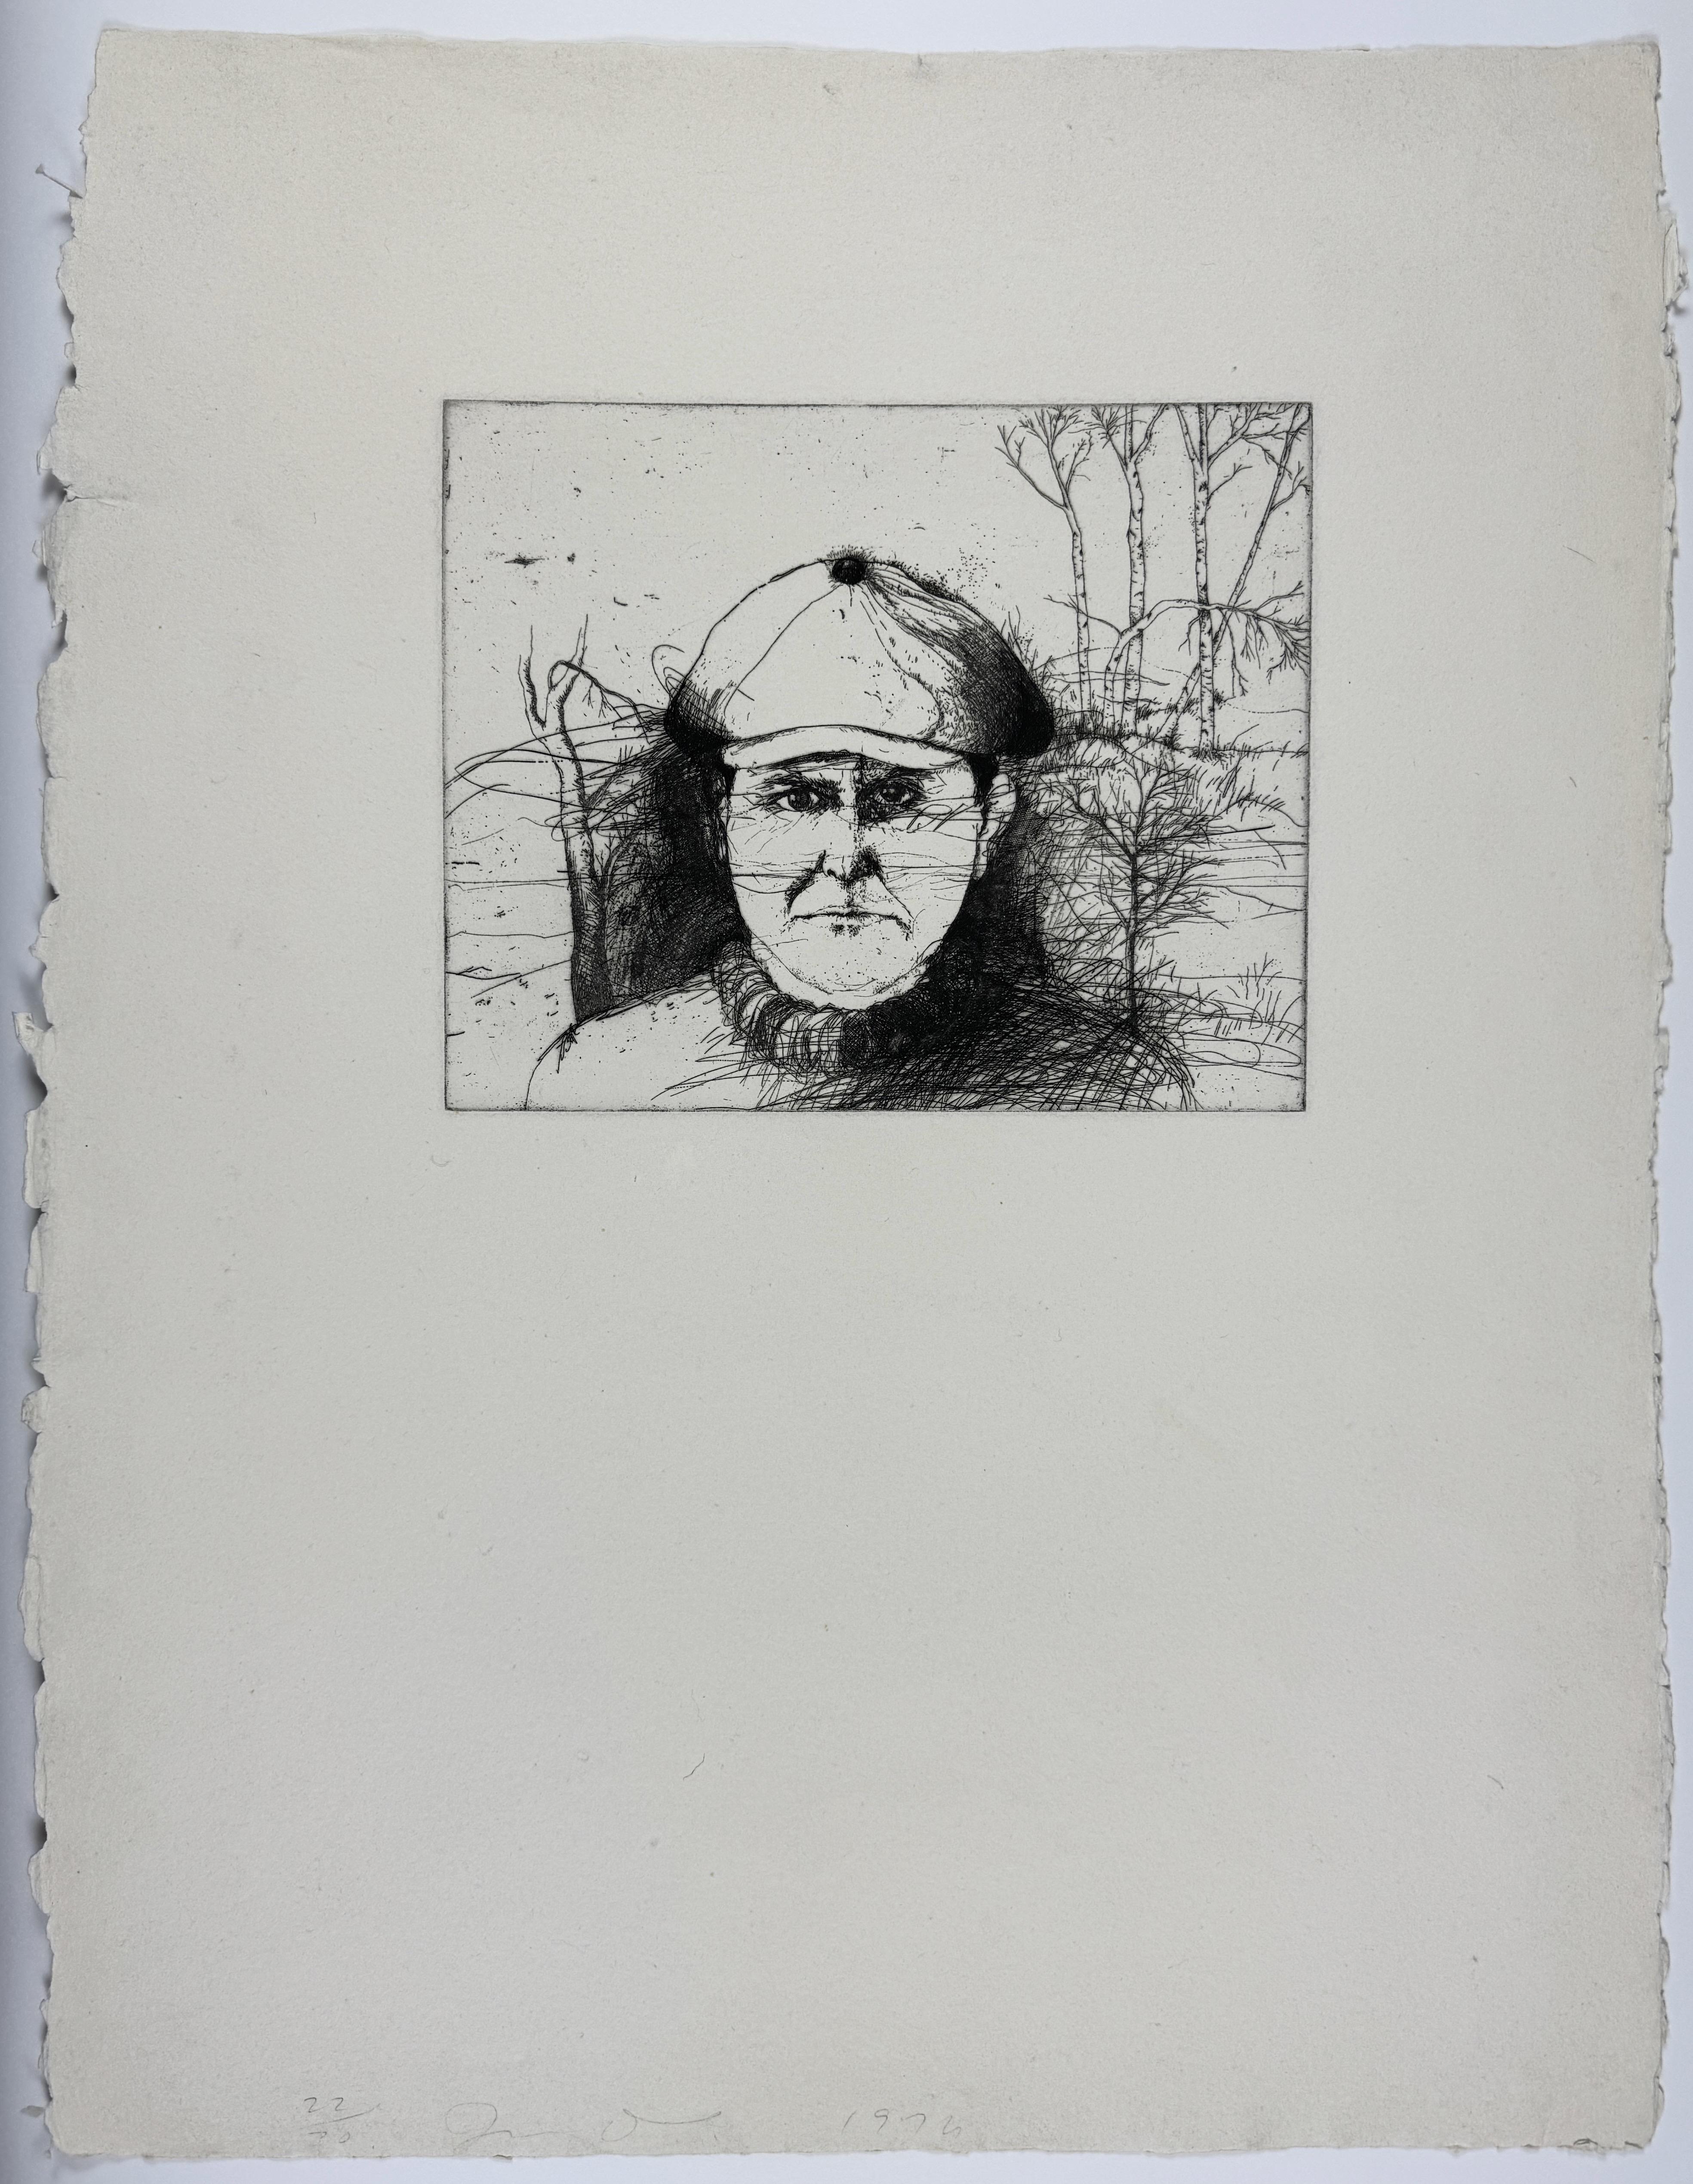 Jim Dine Portrait Print - Self Portrait in a Flat Cap (winter) first state 